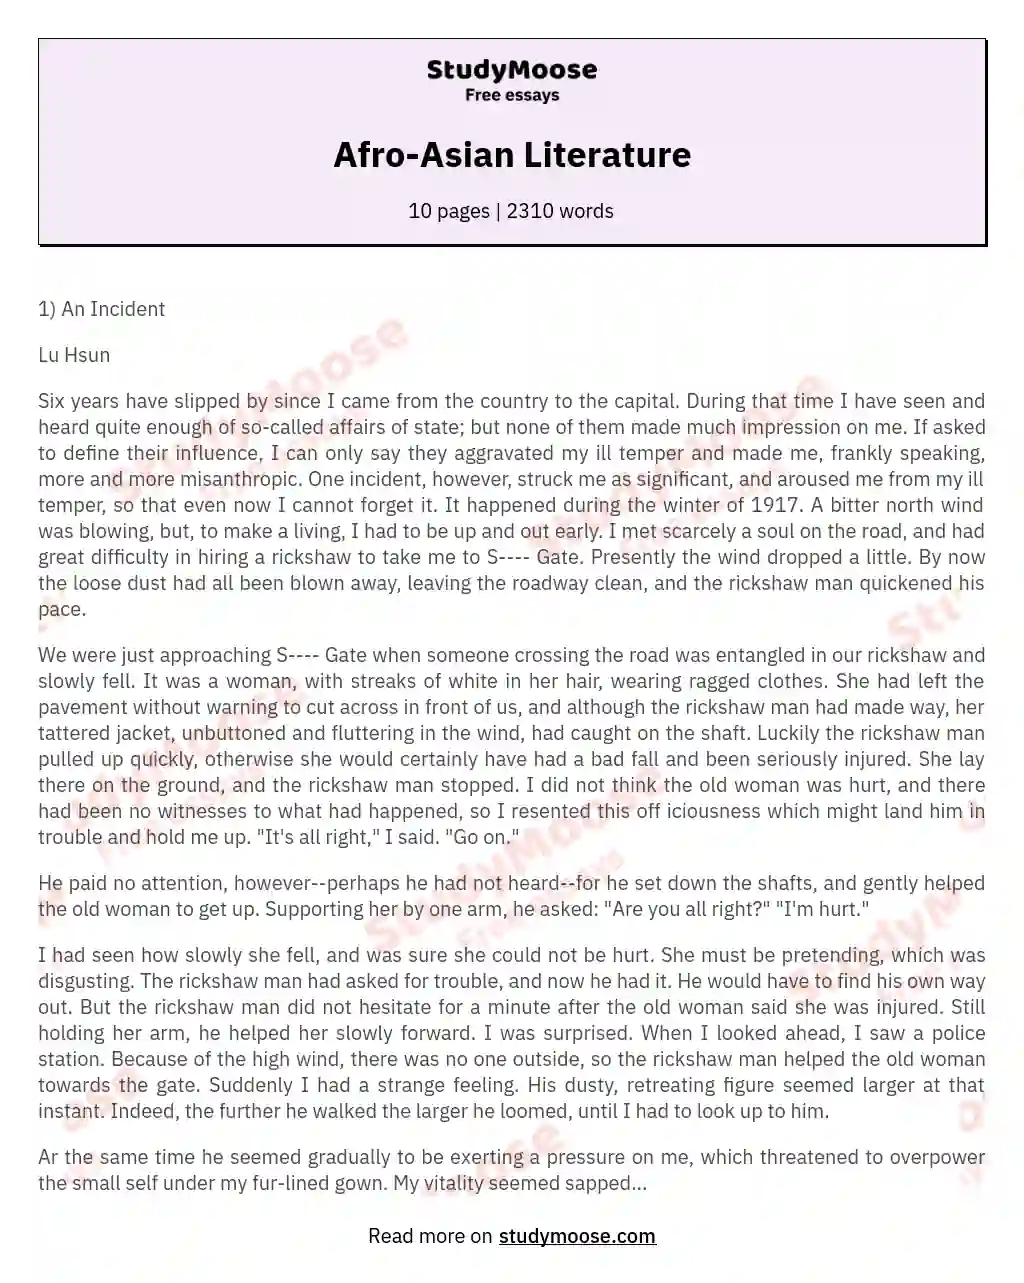 Afro-Asian Literature essay